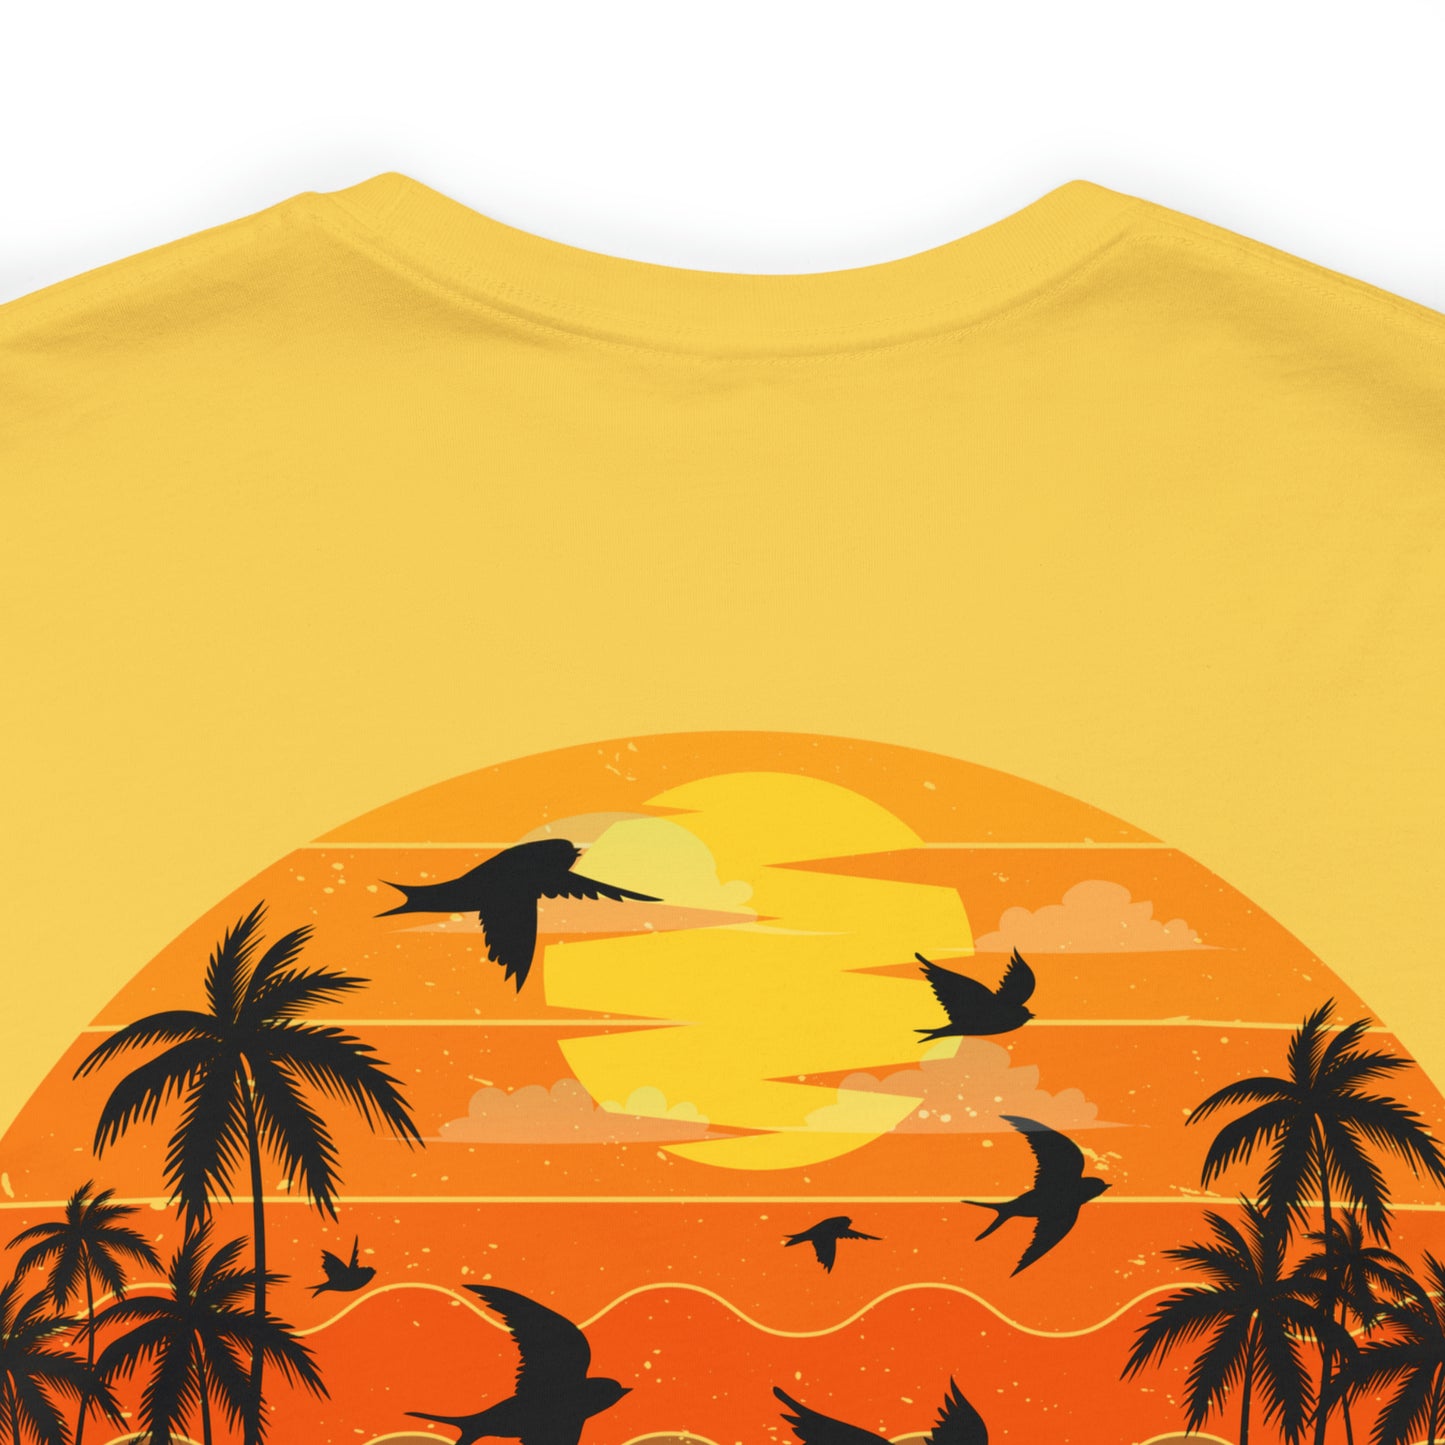 Front and Back Unisex Beach T Shirt Summer Fun Shirt Gift For Her Retro Summer Shirt Gift for Him Vacation Shirt Love Summer Beach Bum Shirt